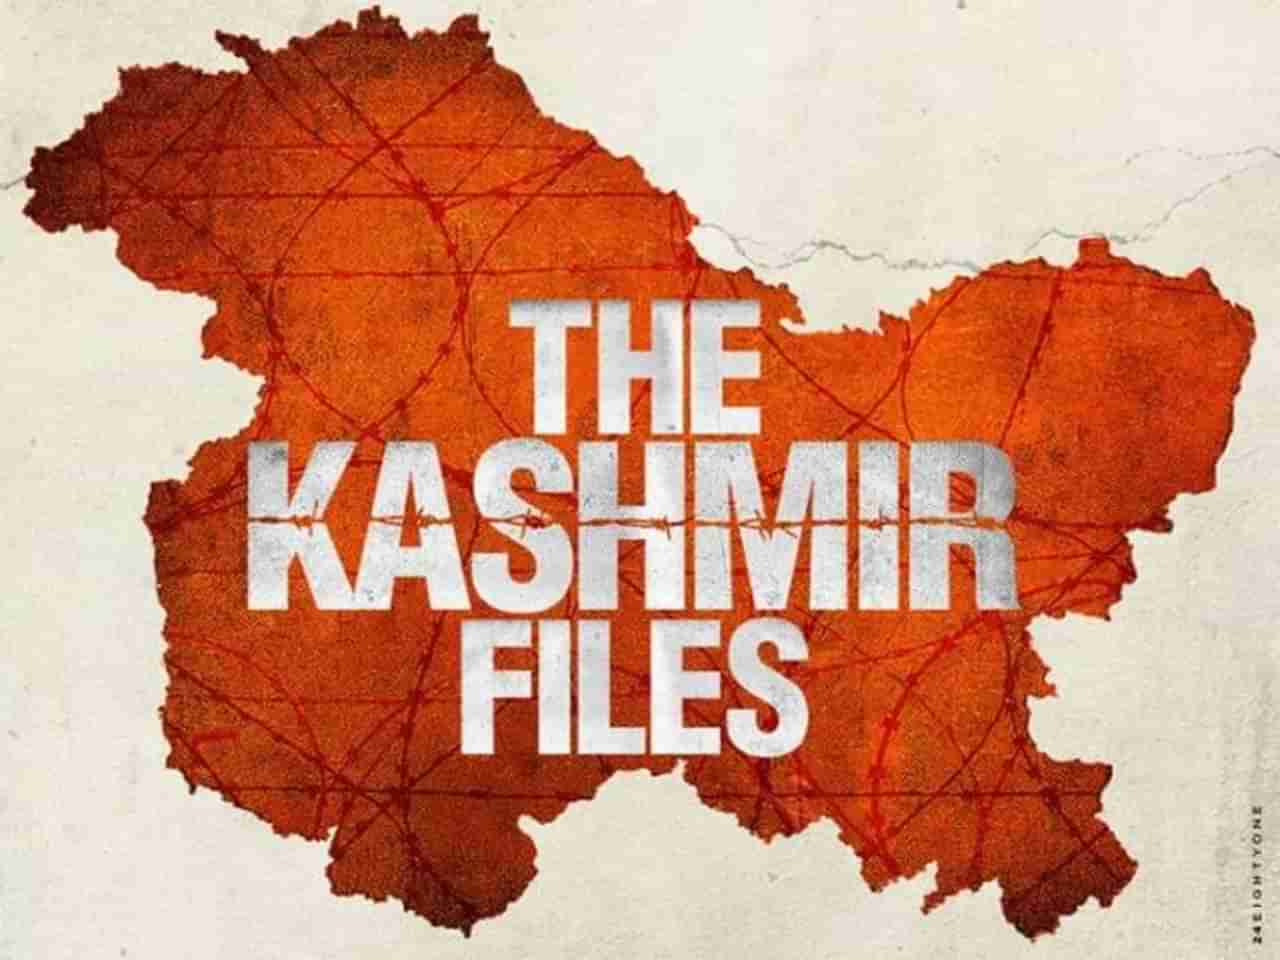 The Kashmir Files : भाजपशासित राज्यात काश्मीर फाईल्स टॅक्स फ्री करण्याची चढाओढ, गुजरात, उत्तर प्रदेशमध्ये टॅक्स फ्री, महाराष्ट्र काय करणार?